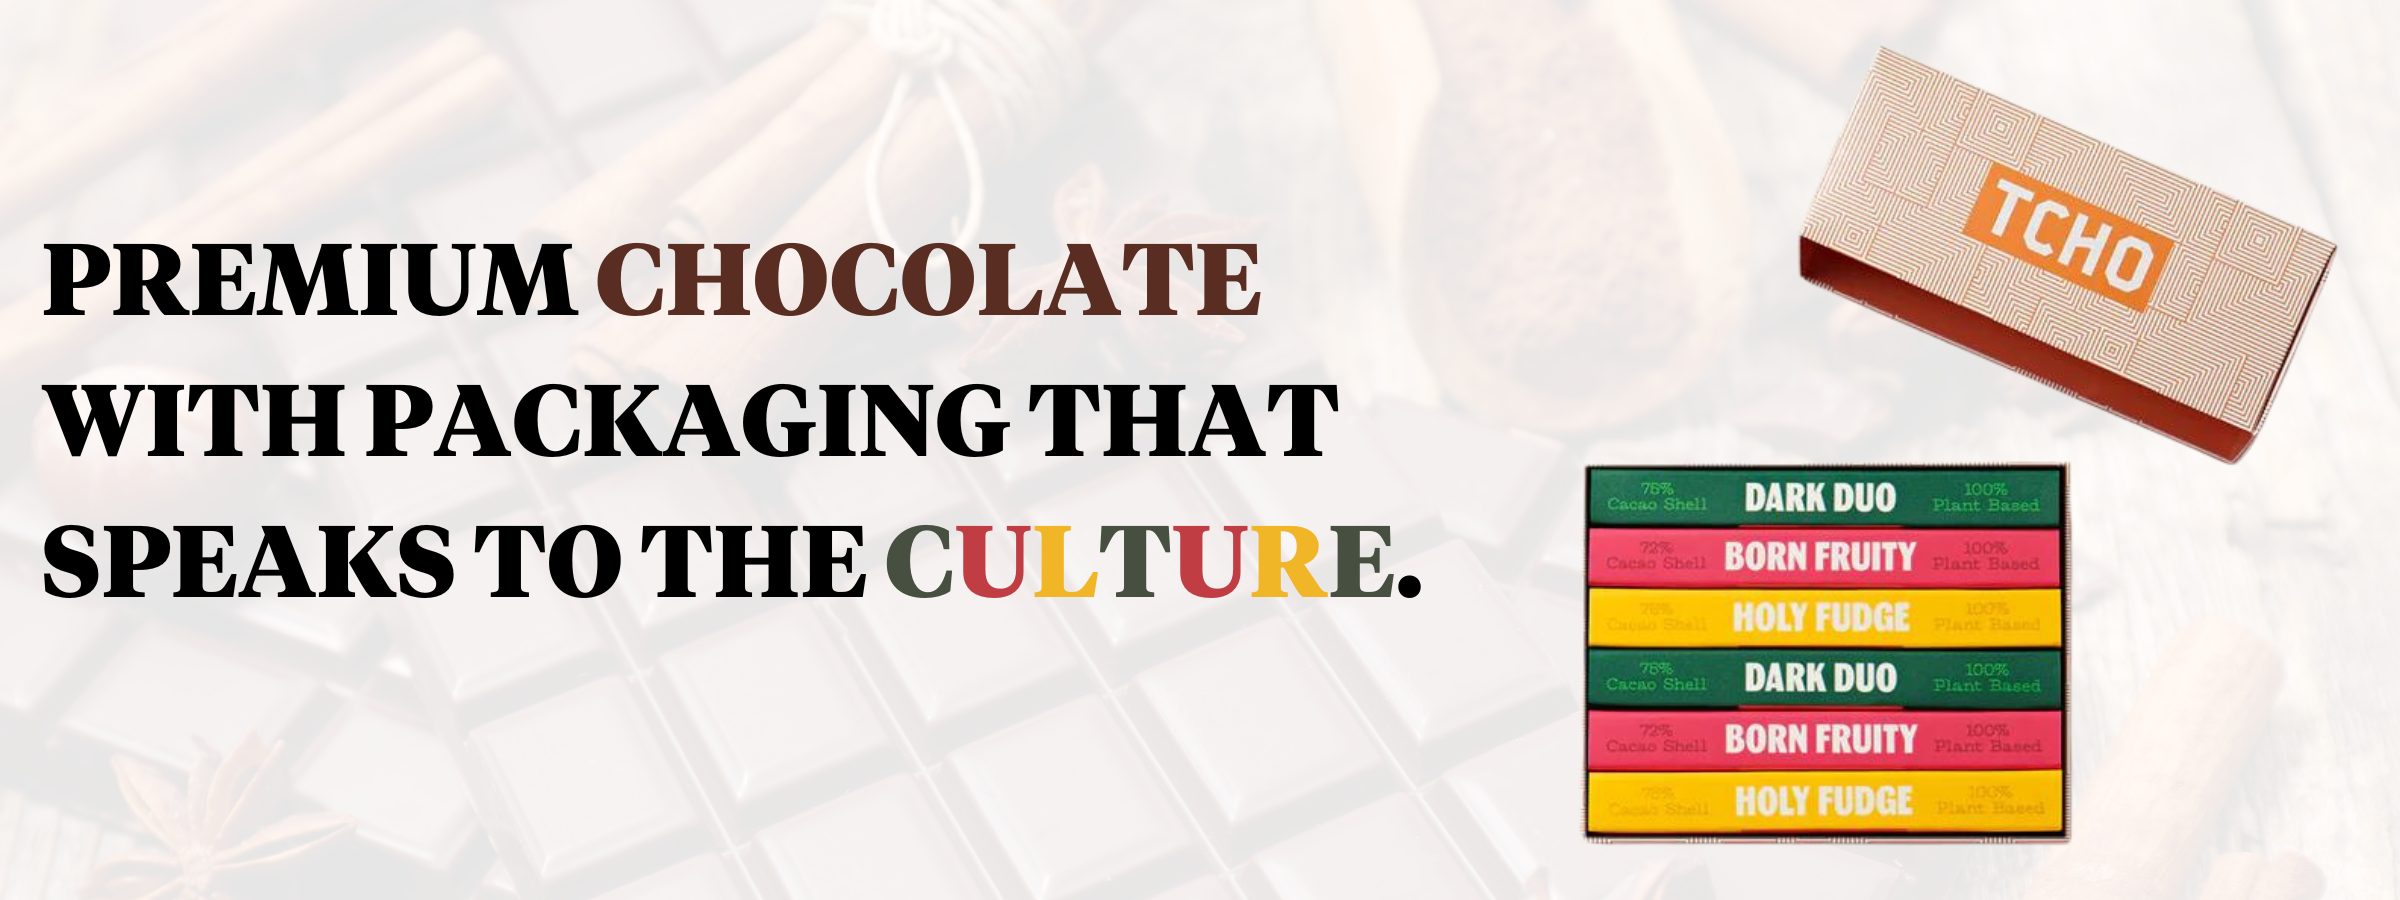 Premium Chocolate Packaging Design